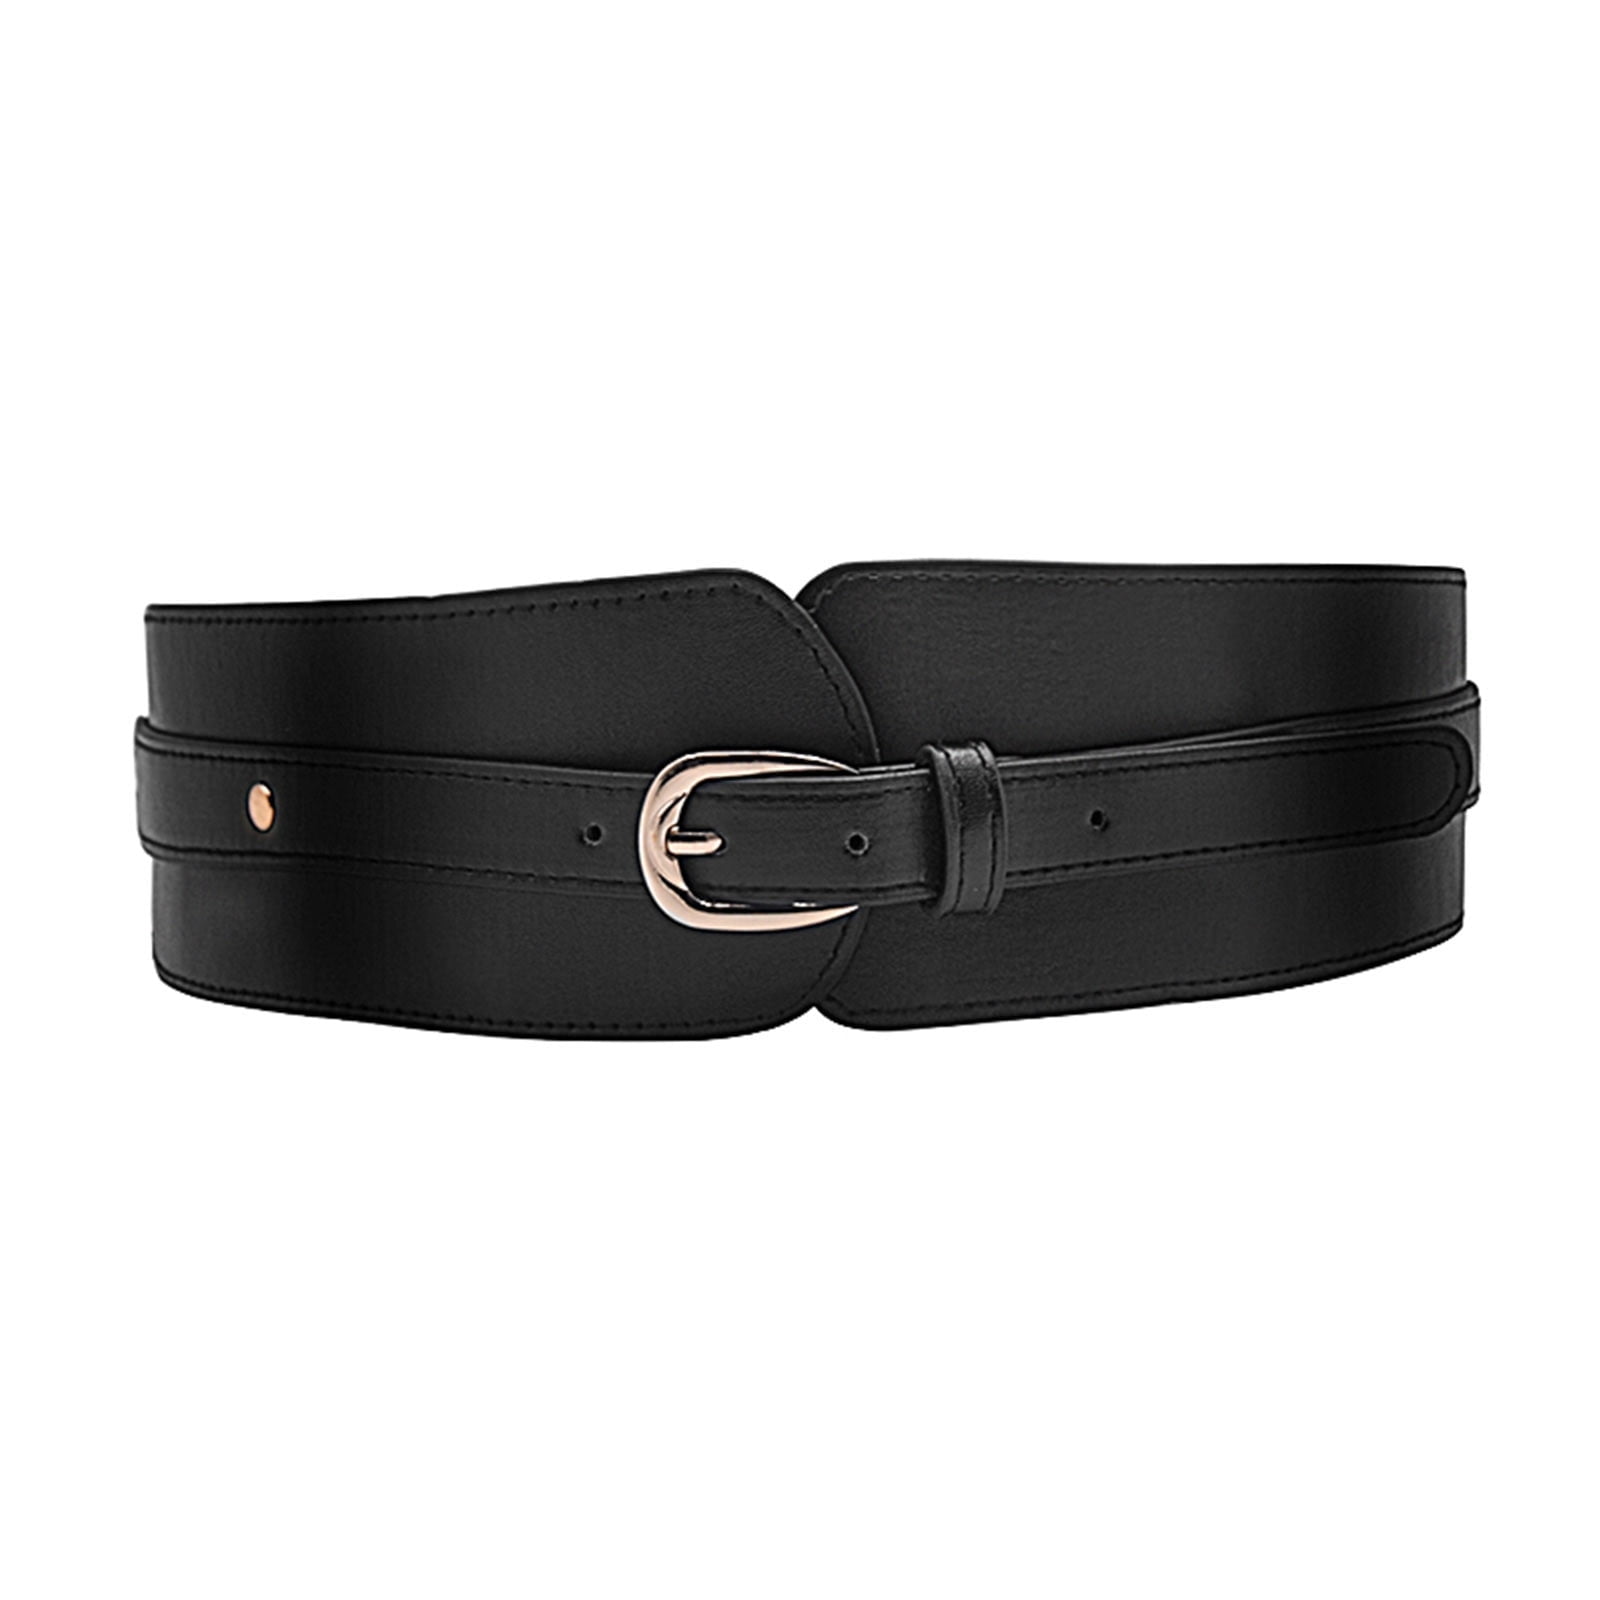 Black Leather Belt,dress Belts for Women,leather Waist Belt